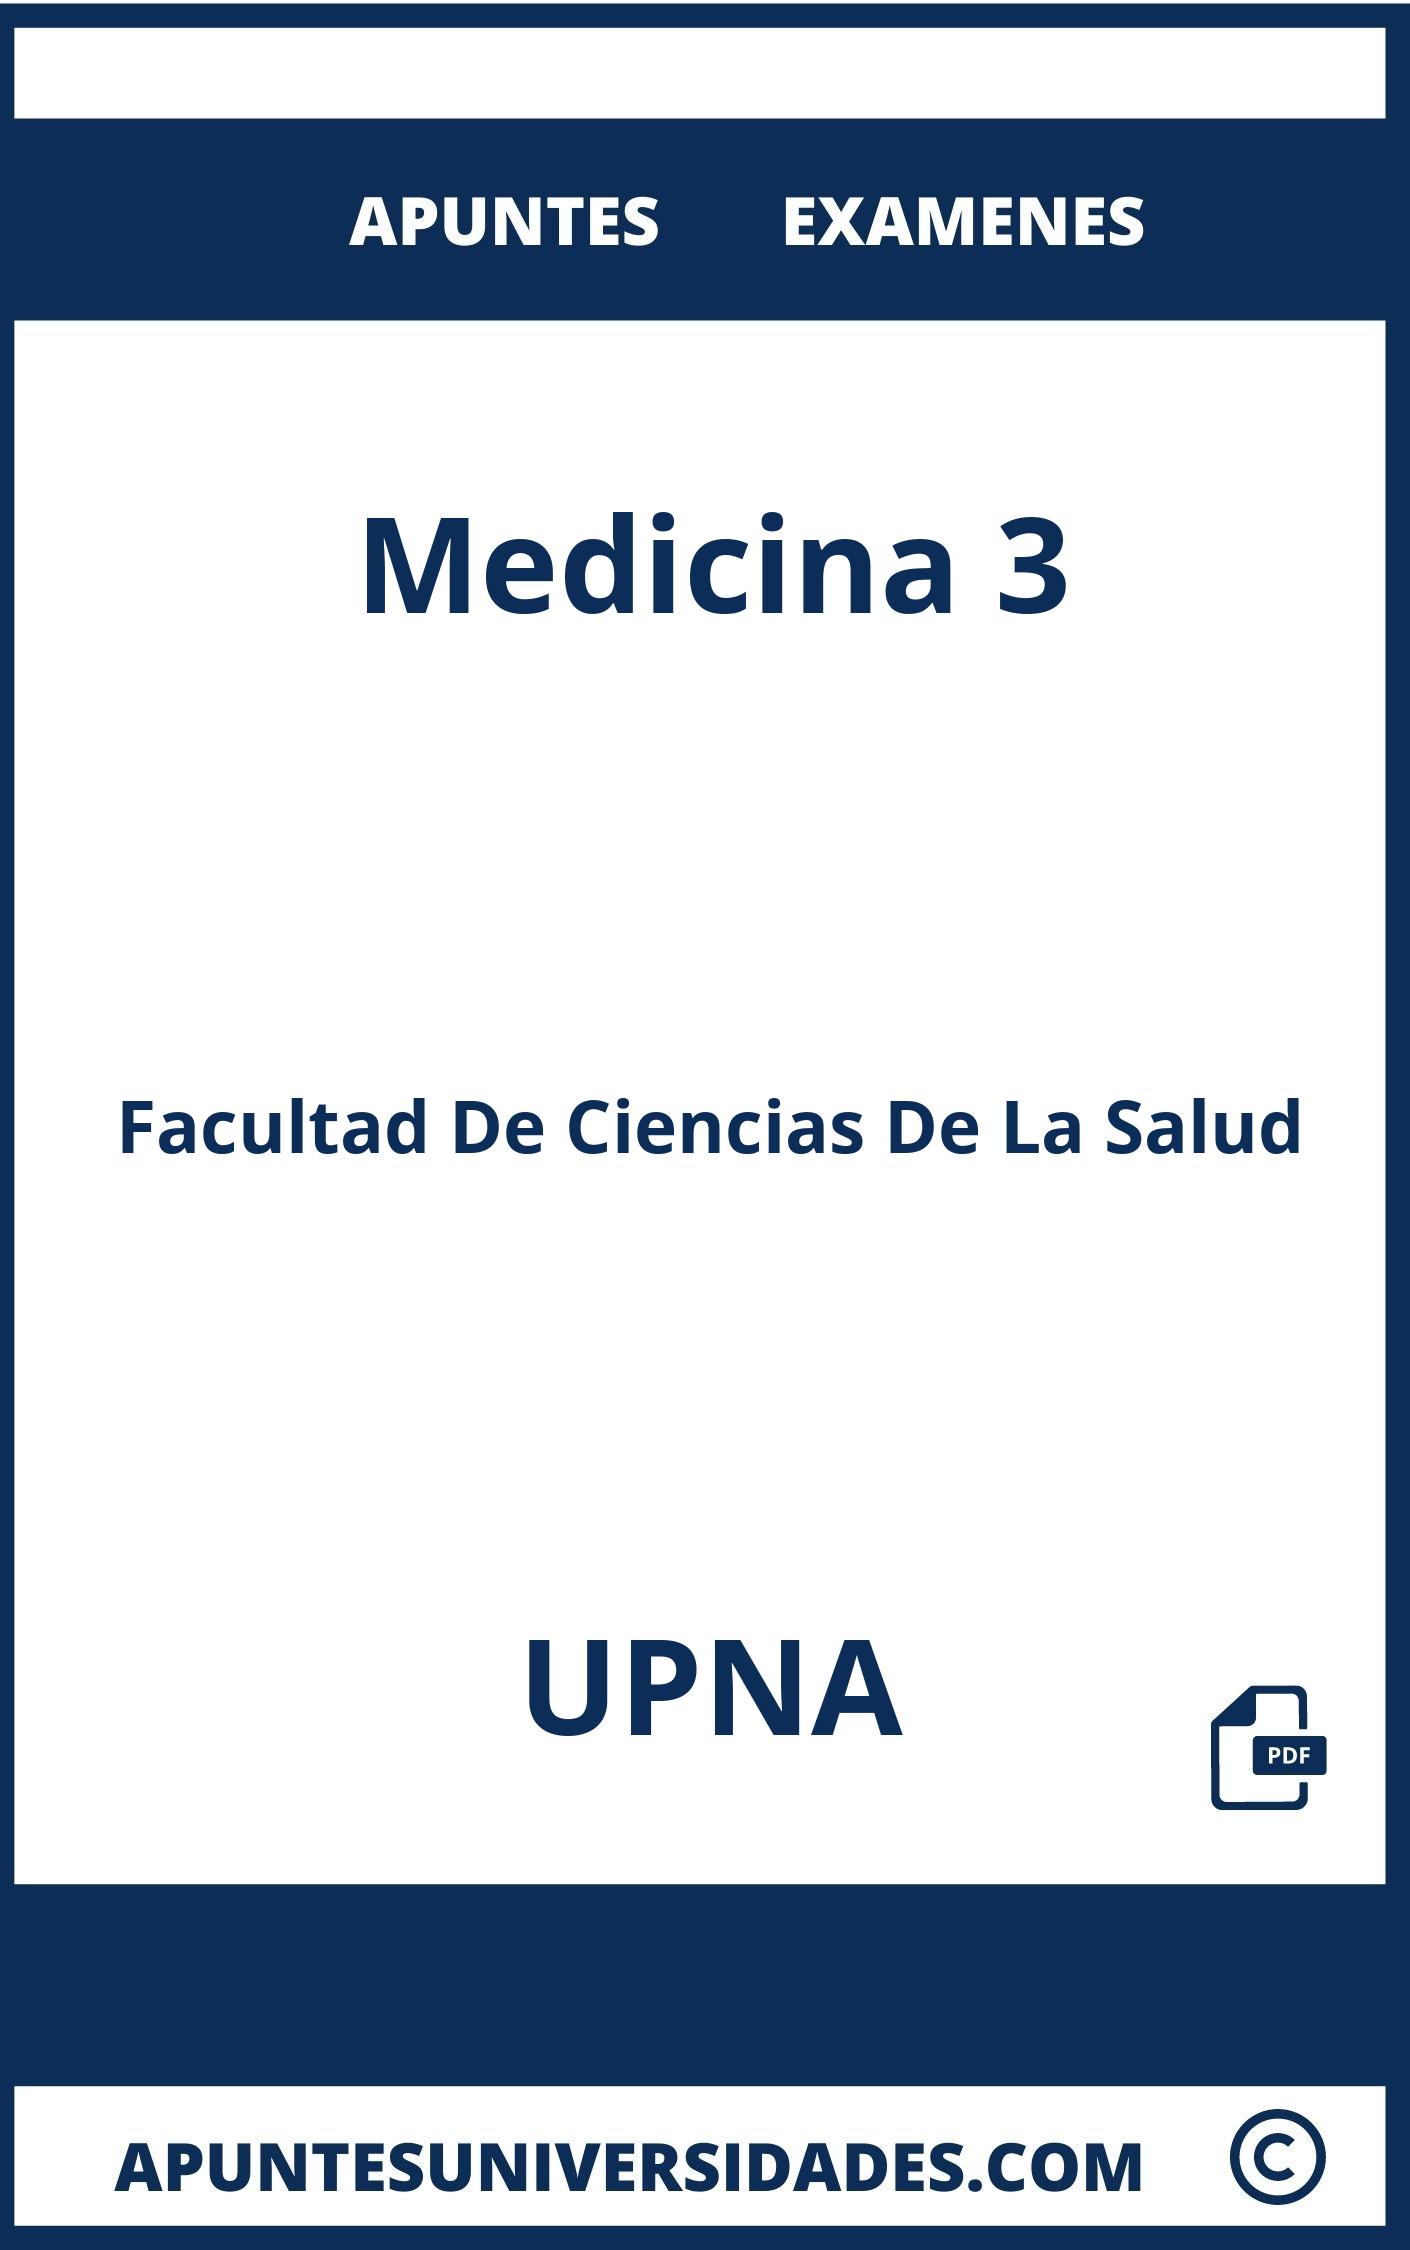 Apuntes y Examenes Medicina 3 UPNA